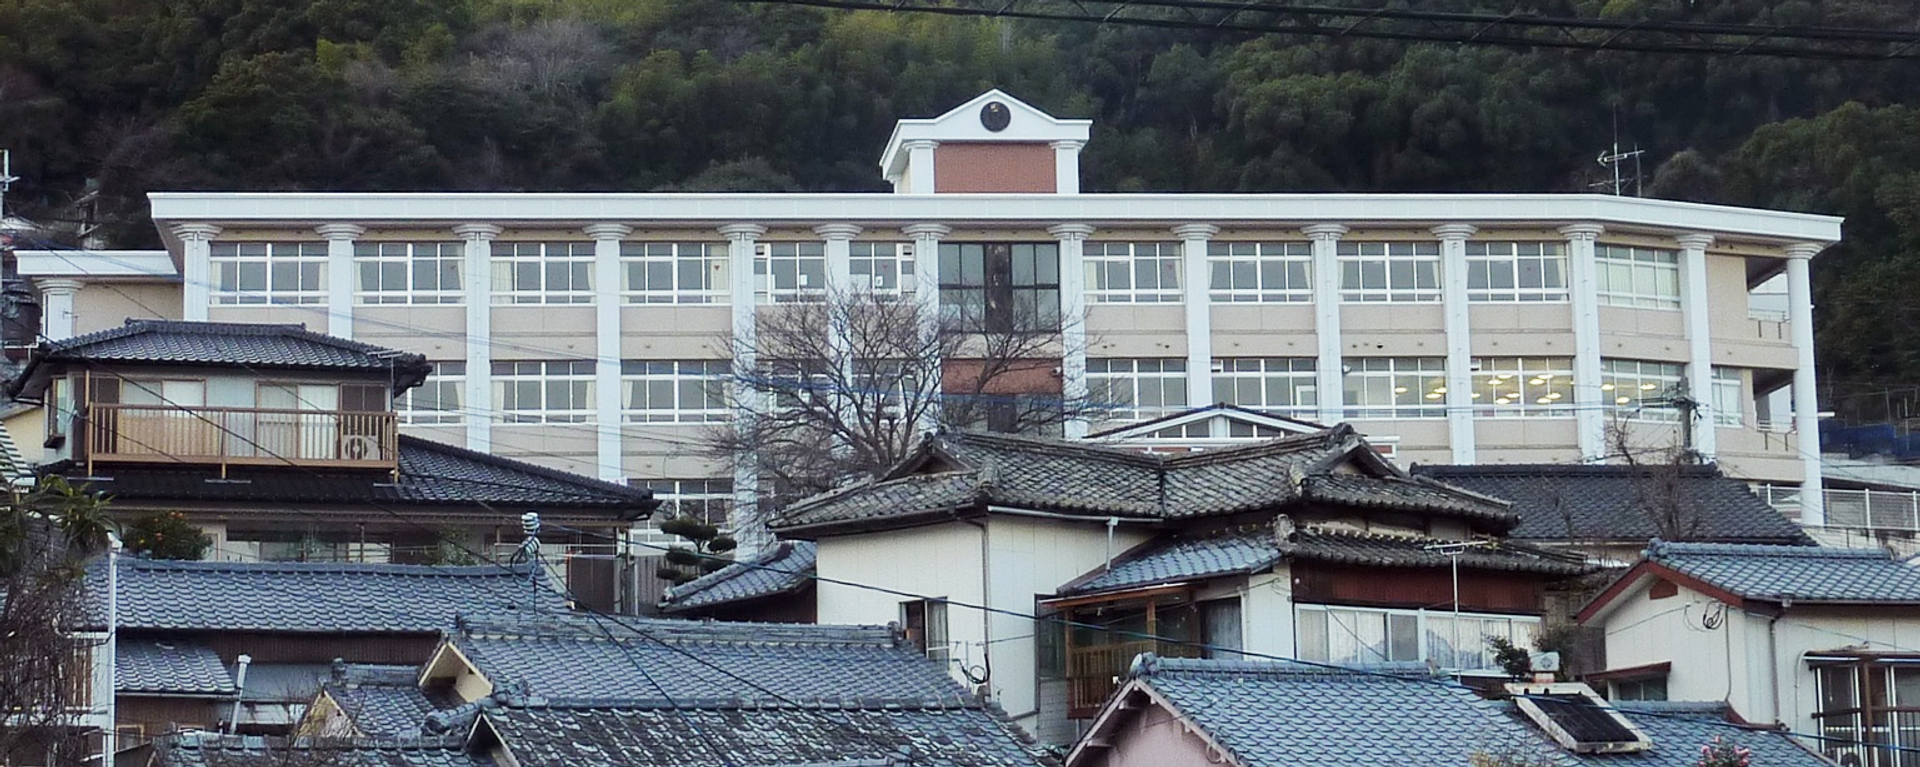 La escuela de Sasebo, donde ocurrió la tragedia - Sputnik Mundo, 1920, 24.02.2021